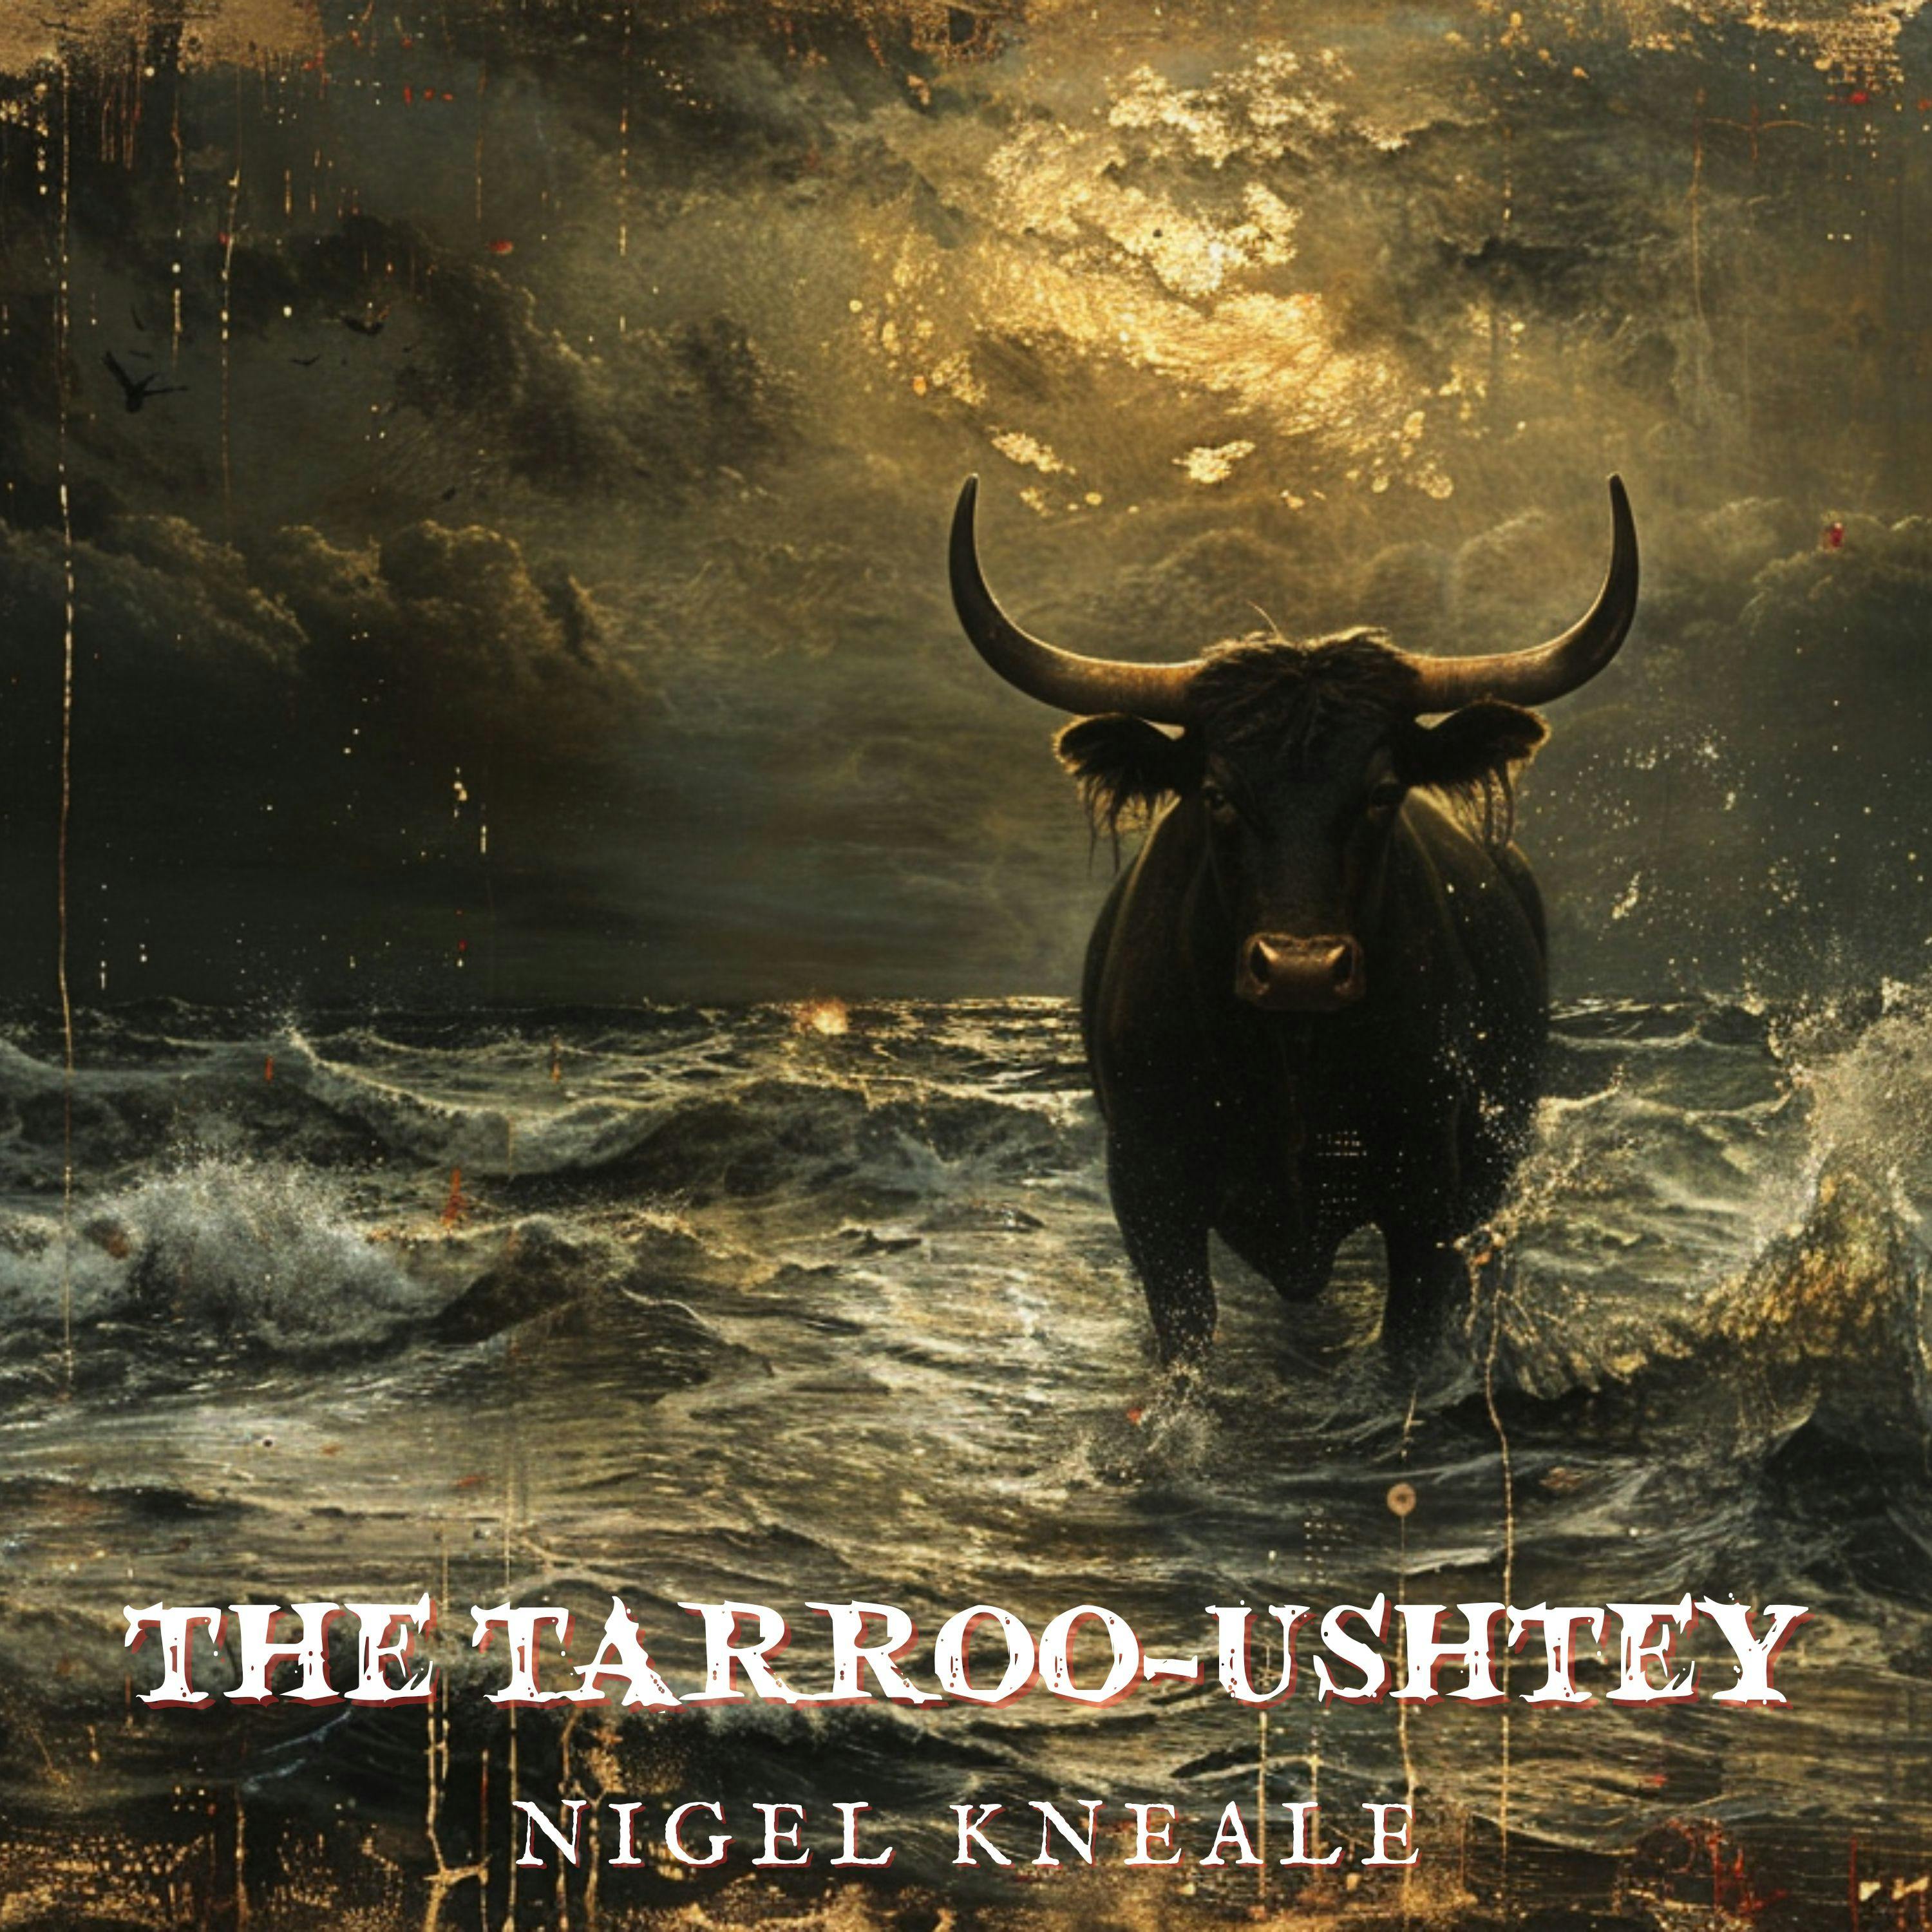 The Tarroo-Ushtey by Nigel Kneale